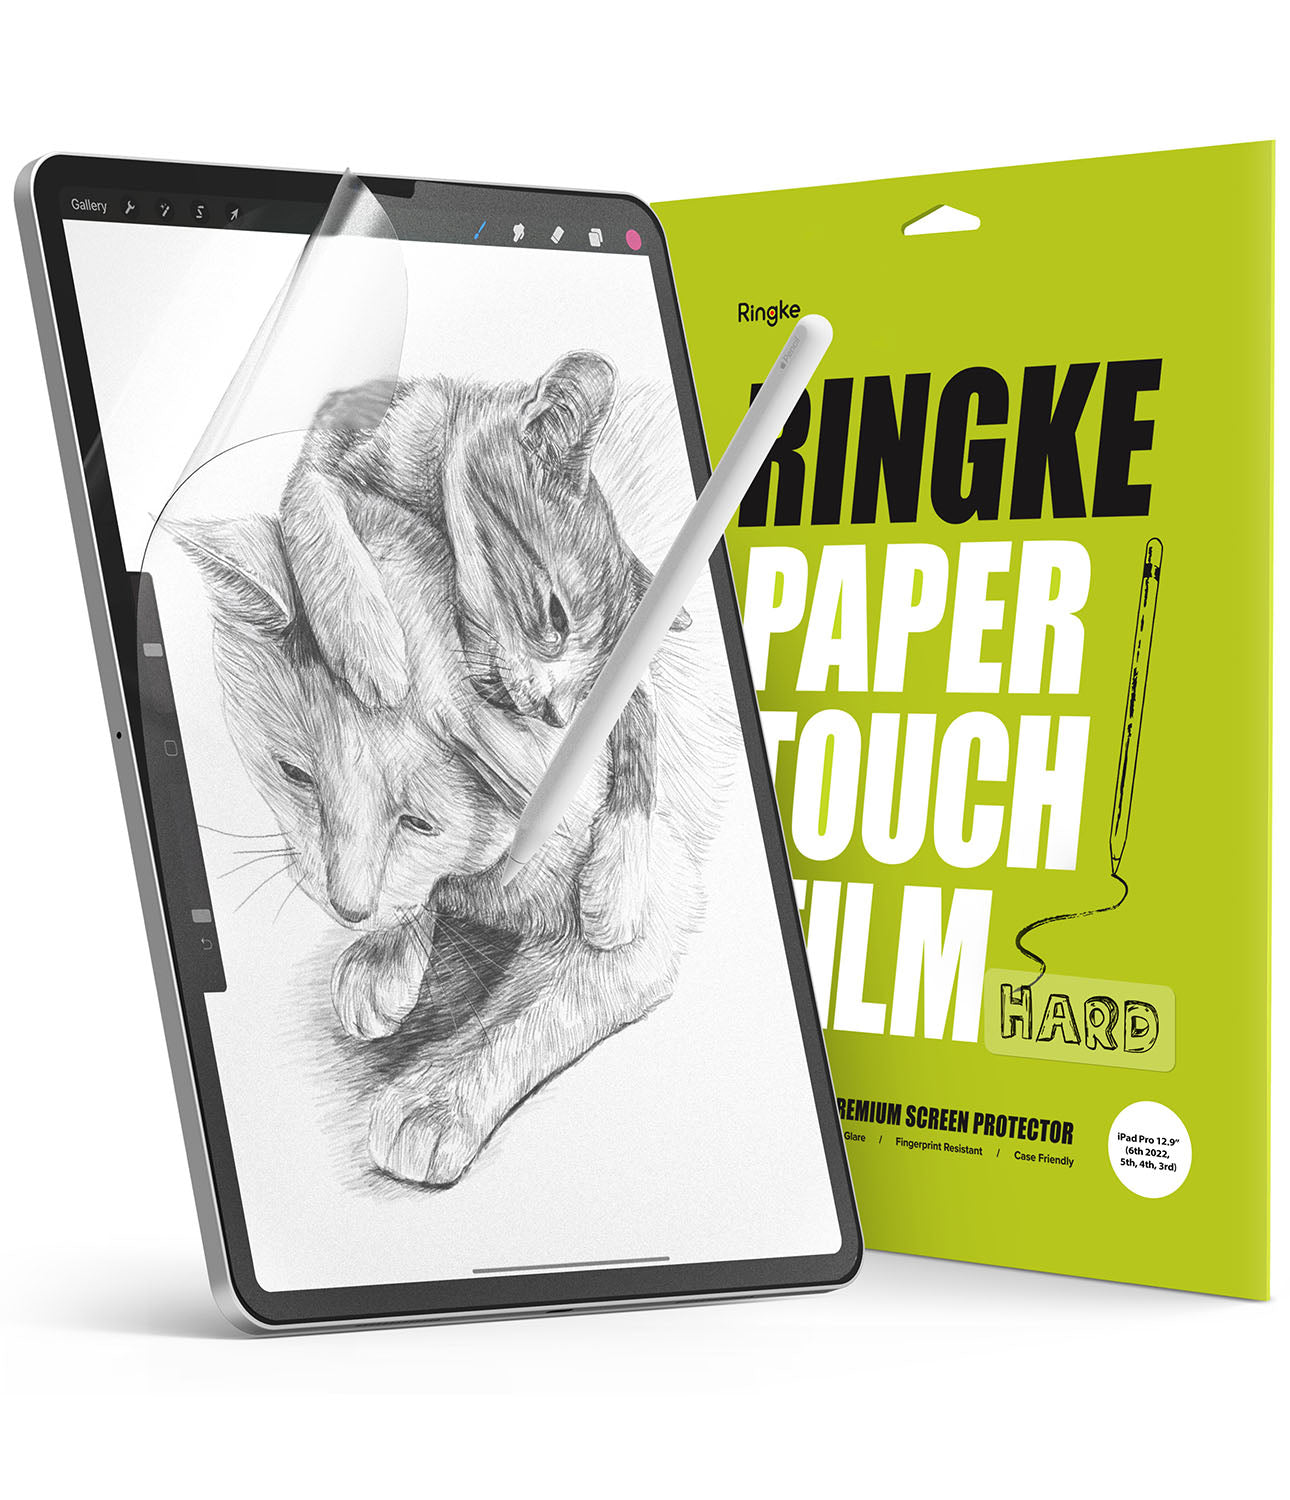 jeg er enig bibel positur iPad Pro Screen Protector (12.9") | Paper Touch Film Hard – Ringke Official  Store